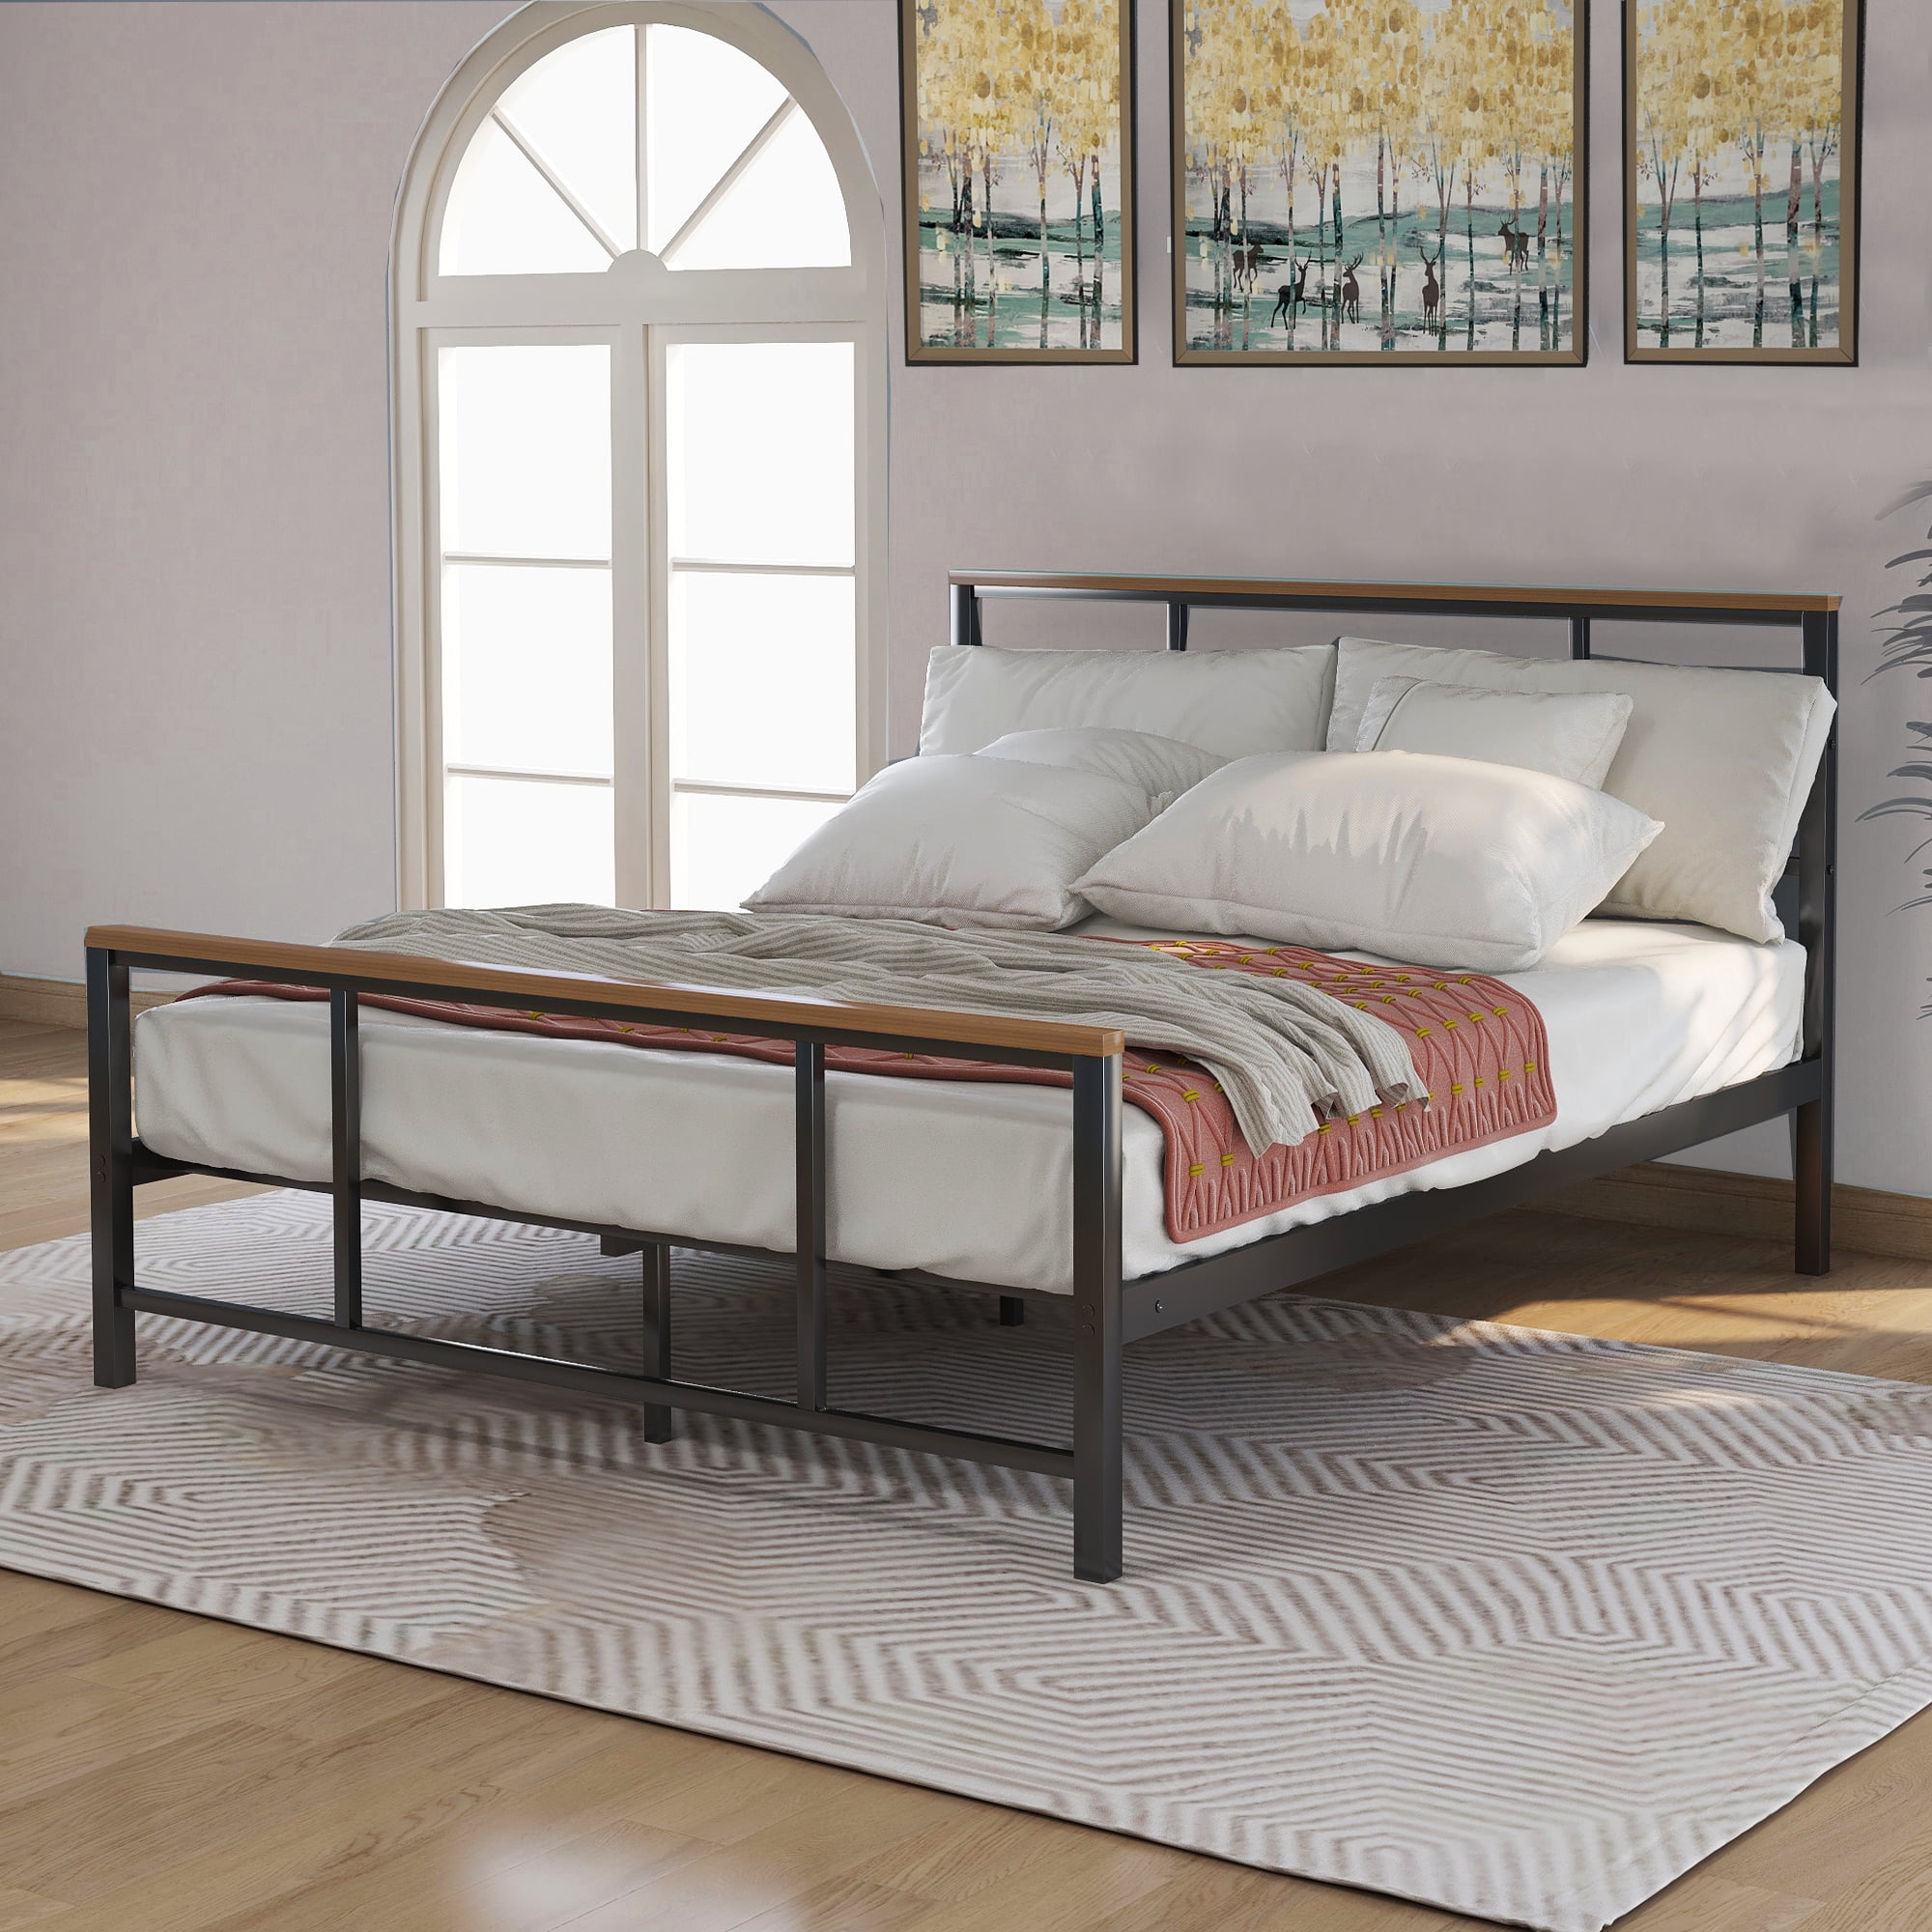 Bed Frame Bedroom Furniture, Contemporary Metal Bed Frame